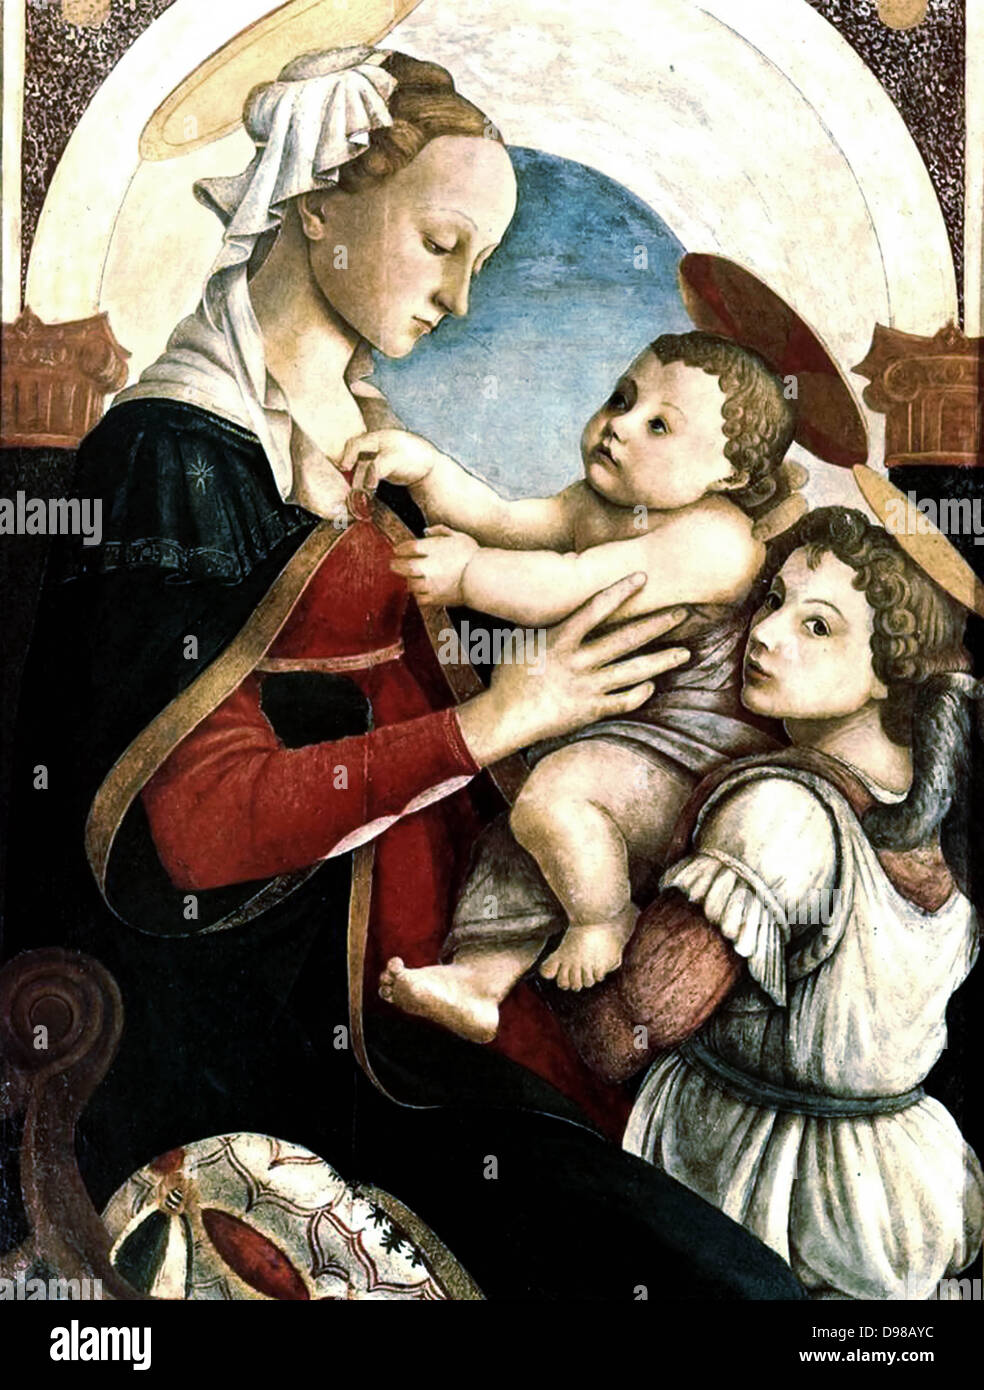 Er Madonna mit Kind und ein Engel ist ein Gemälde von der italienischen Renaissance Maler Sandro Botticelli, C. 1465-1467. Es ist in Spedale degli Innocenti in Florenz untergebracht. Stockfoto